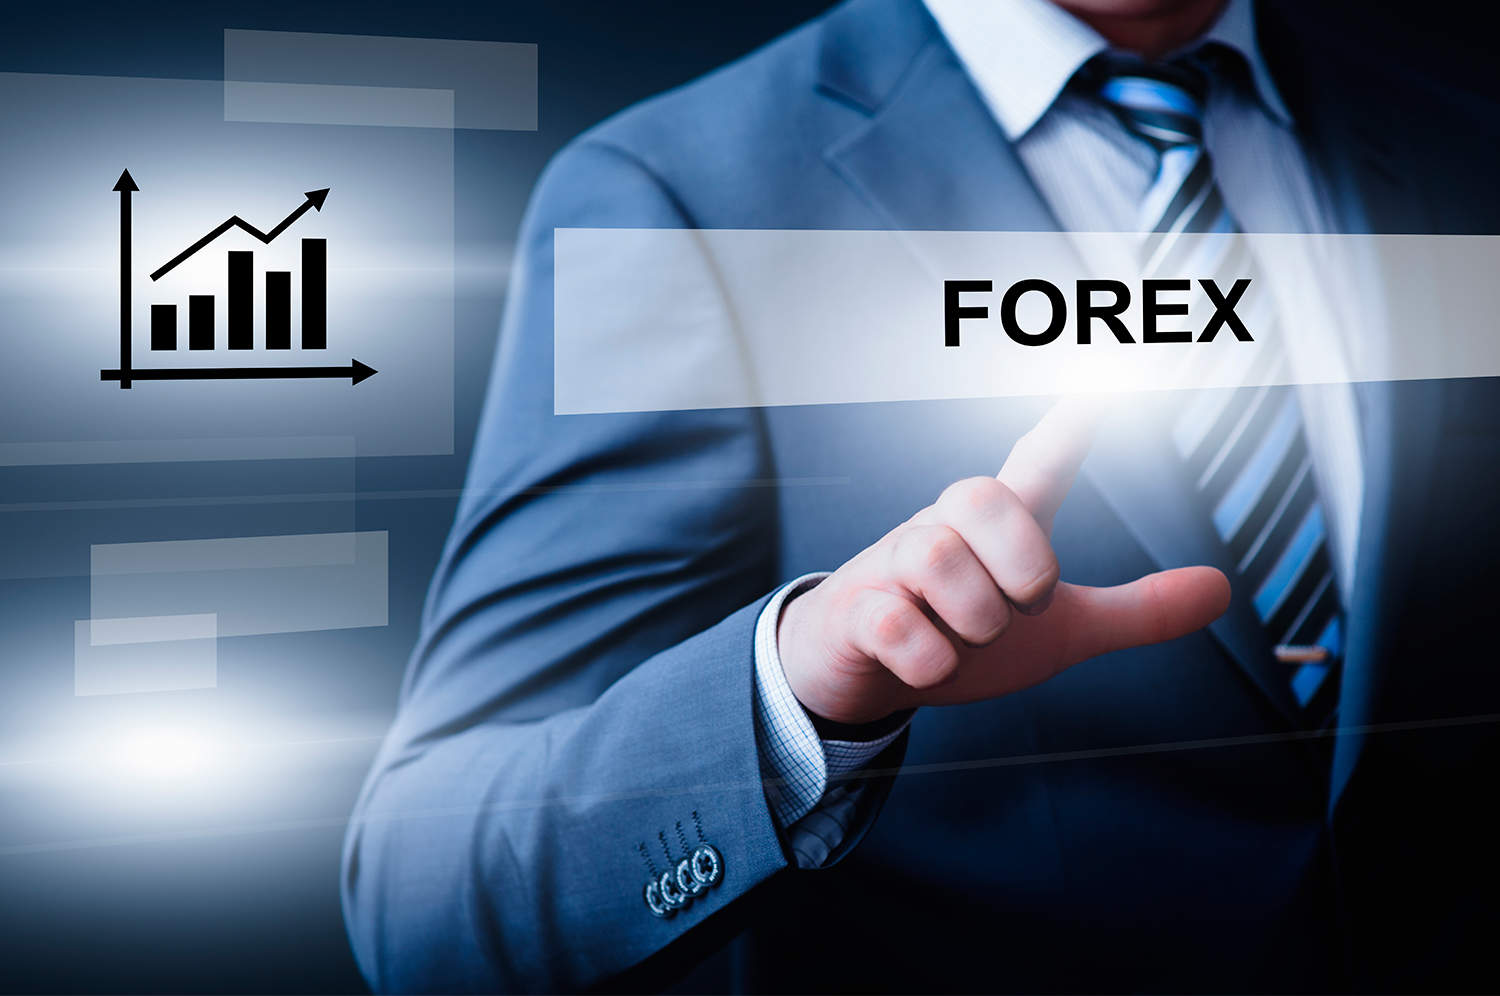 Forex money market instruments